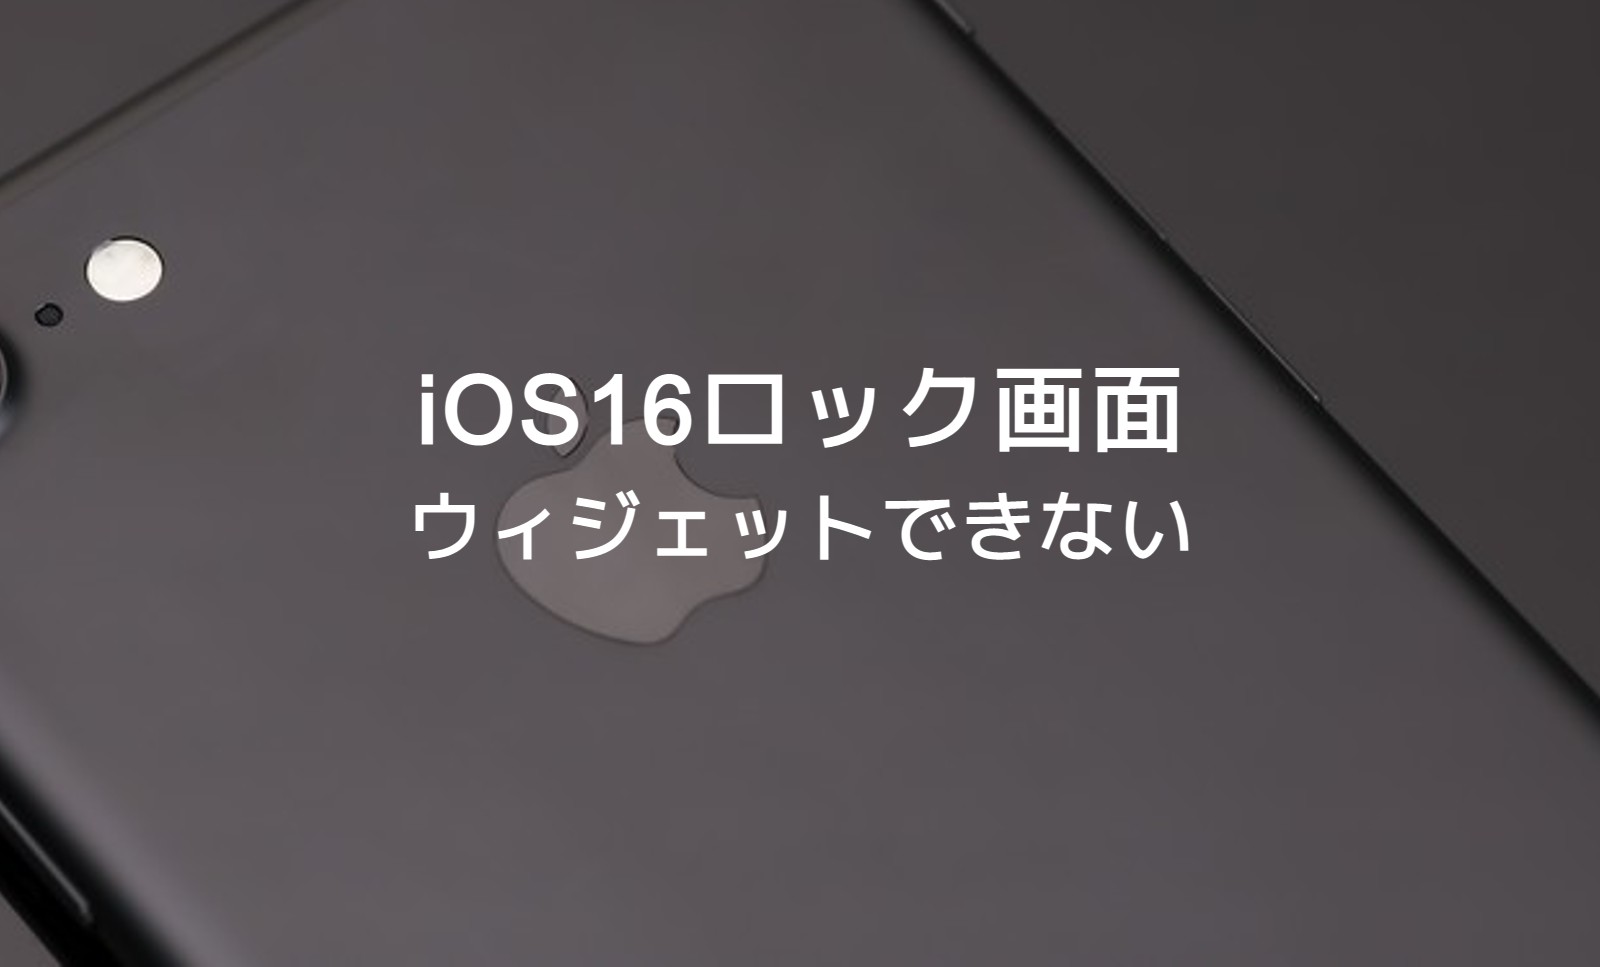 iOS17のiPhoneロック画面でウィジェットができない&表示されない場合の対処法を解説のサムネイル画像